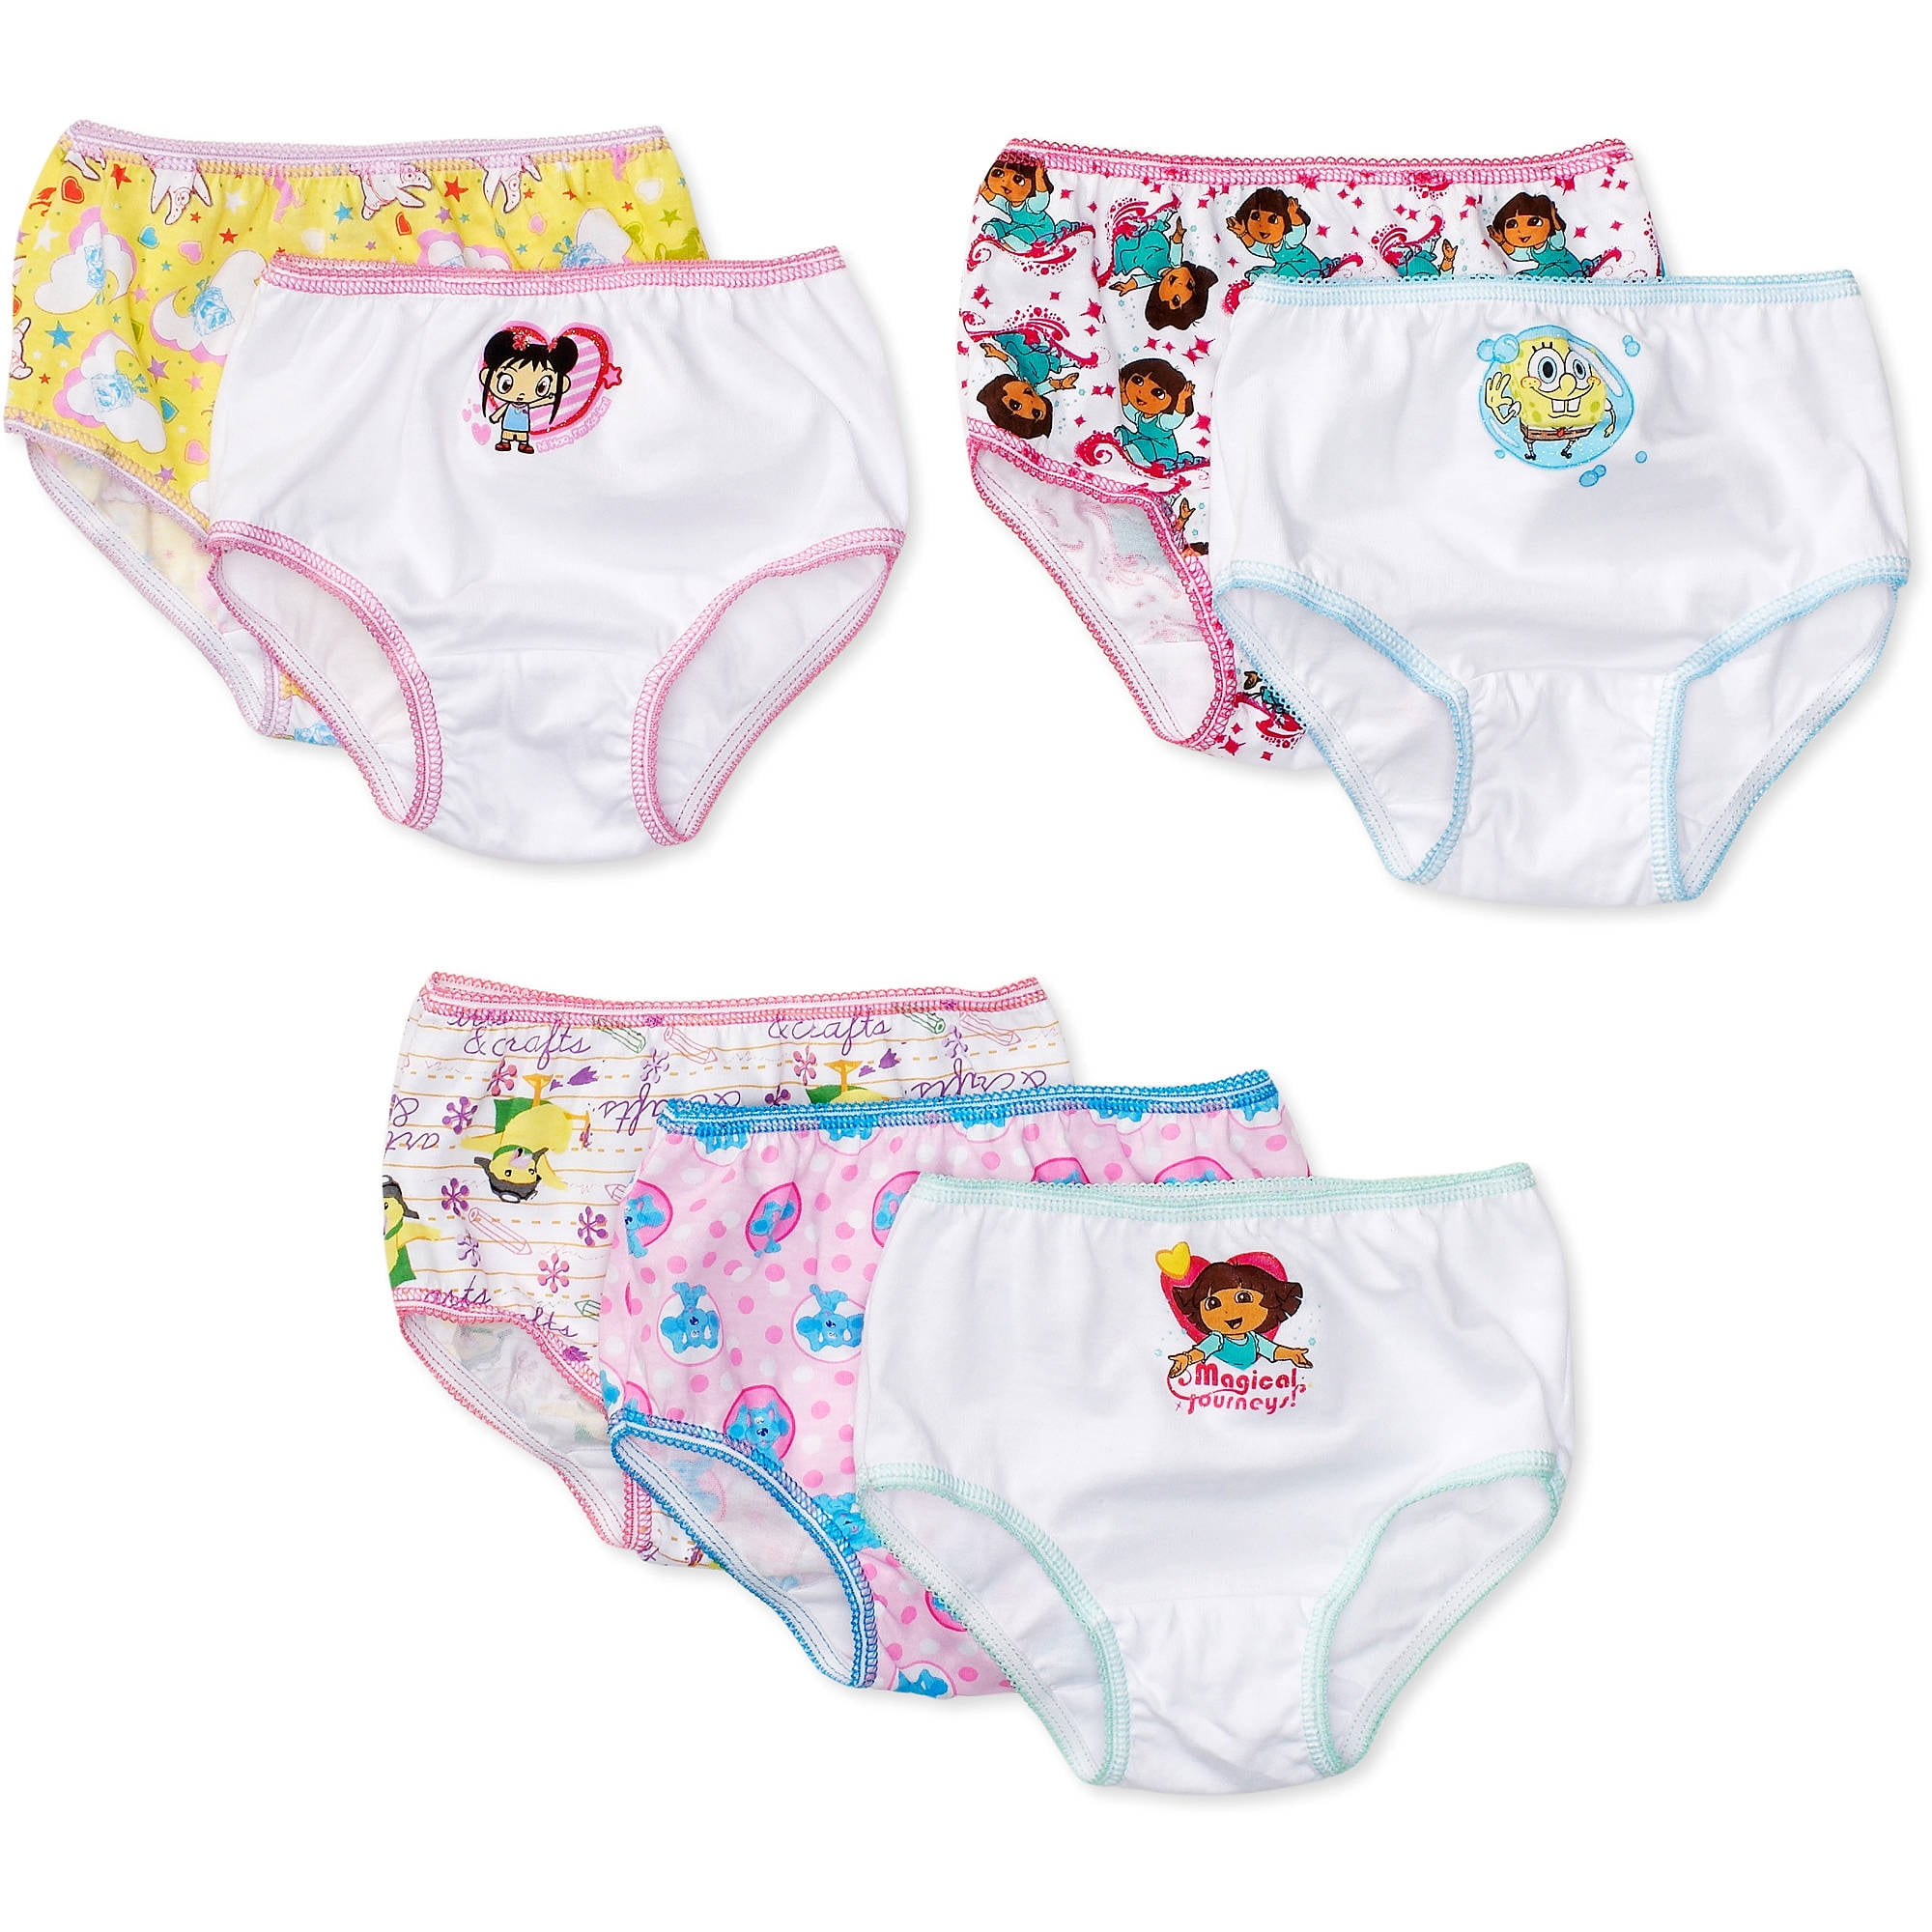 Nickelodeon Paw Patrol - 7 Pack Girls Underwear Briefs